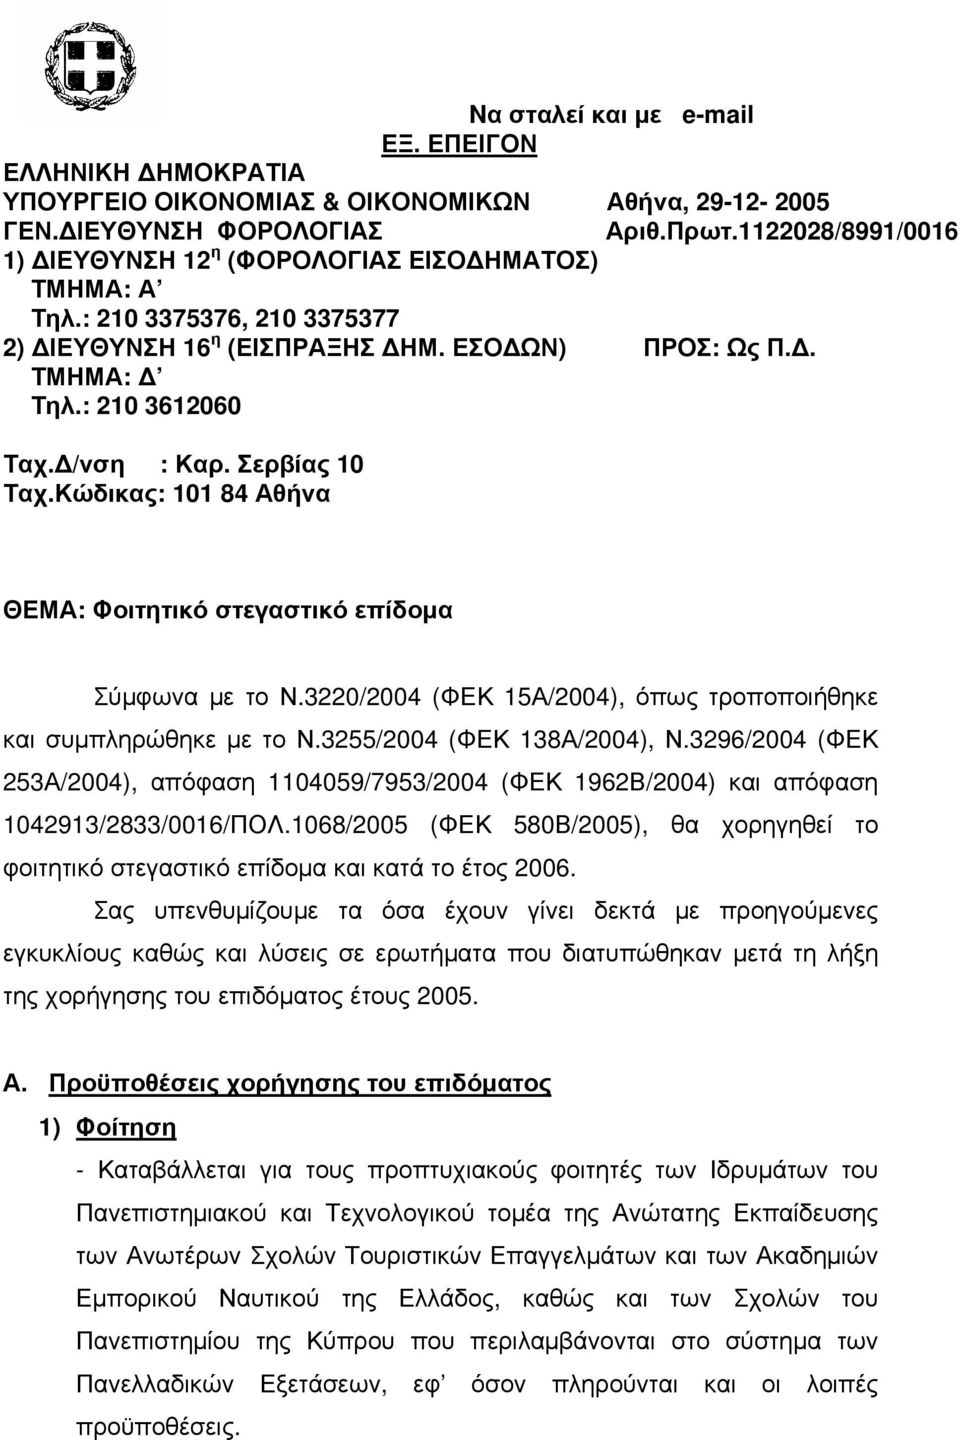 Σερβίας 10 Ταχ.Κώδικας: 101 84 Αθήνα ΘΕΜΑ: Φοιτητικό στεγαστικό επίδοµα Σύµφωνα µε το Ν.3220/2004 (ΦΕΚ 15Α/2004), όπως τροποποιήθηκε και συµπληρώθηκε µε το Ν.3255/2004 (ΦΕΚ 138Α/2004), Ν.